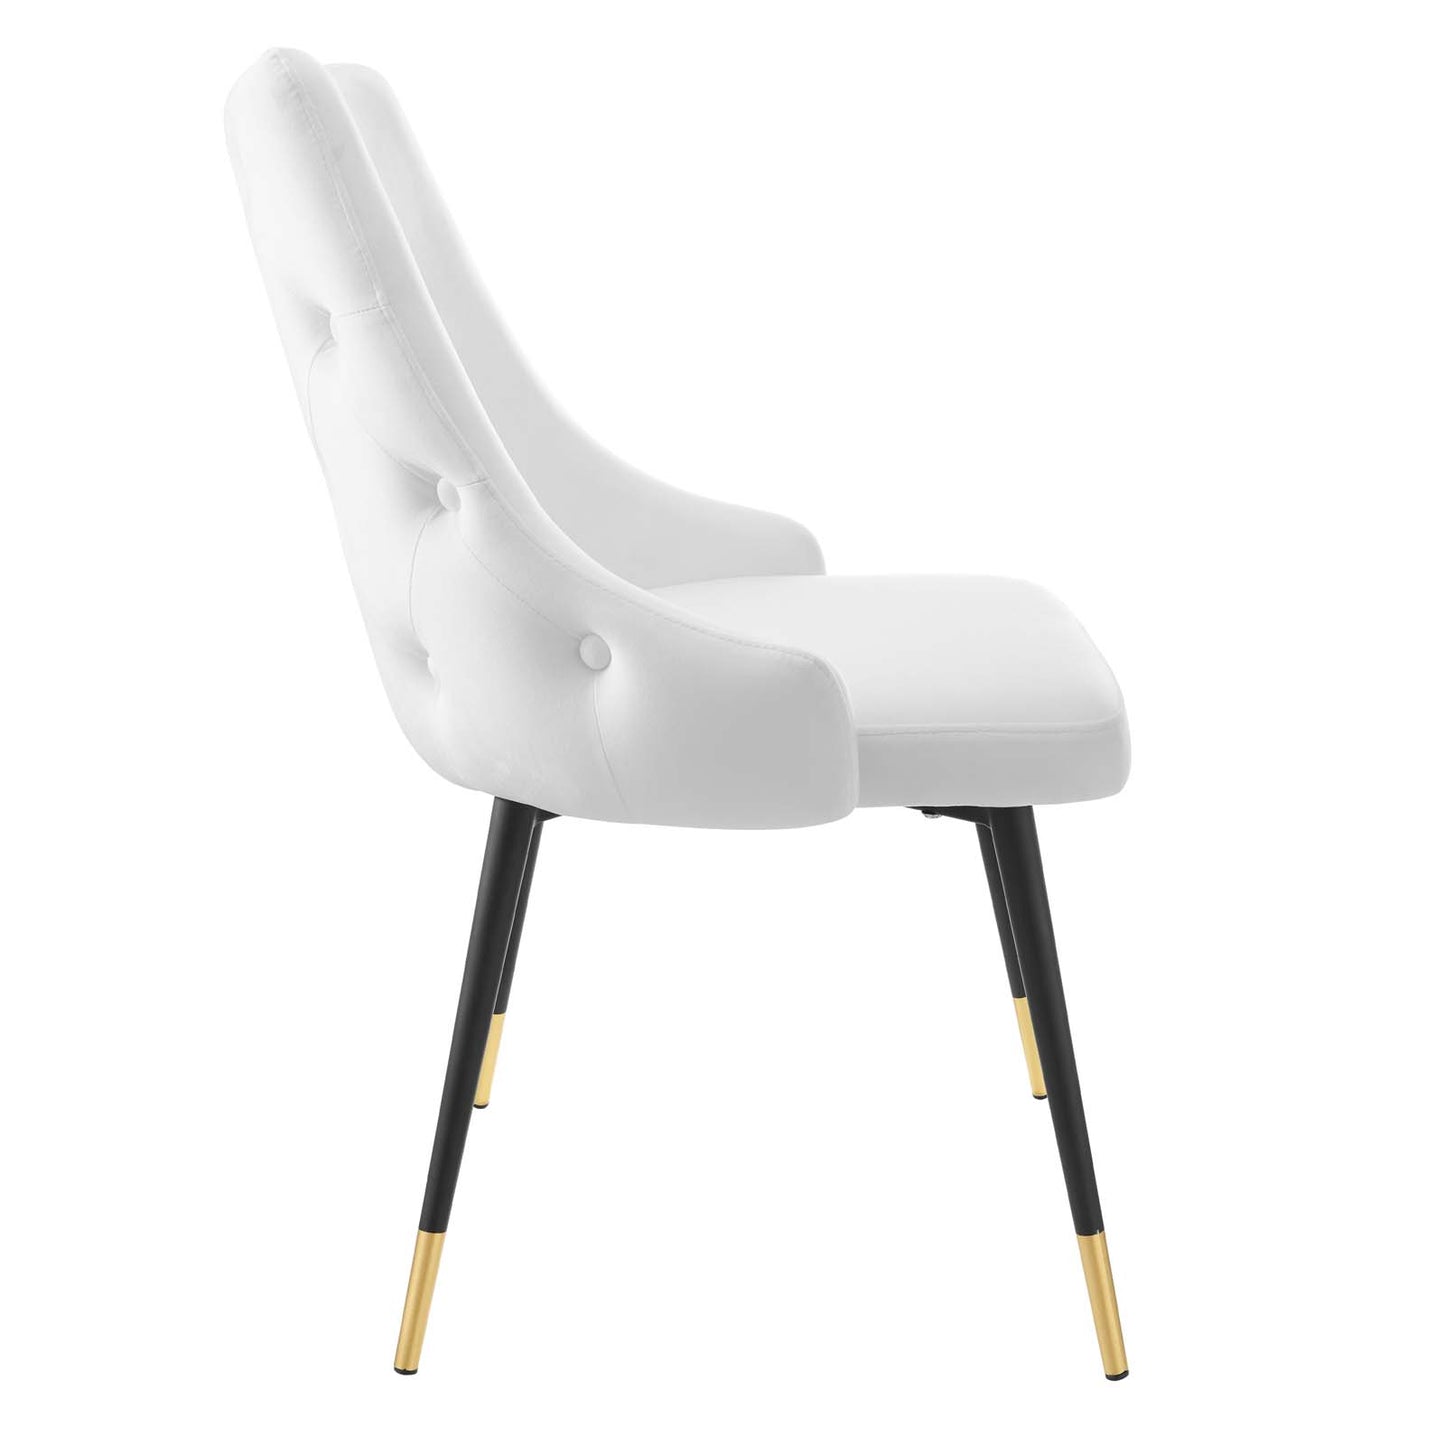 Adorn Tufted Performance Velvet Dining Side Chair White EEI-3907-WHI